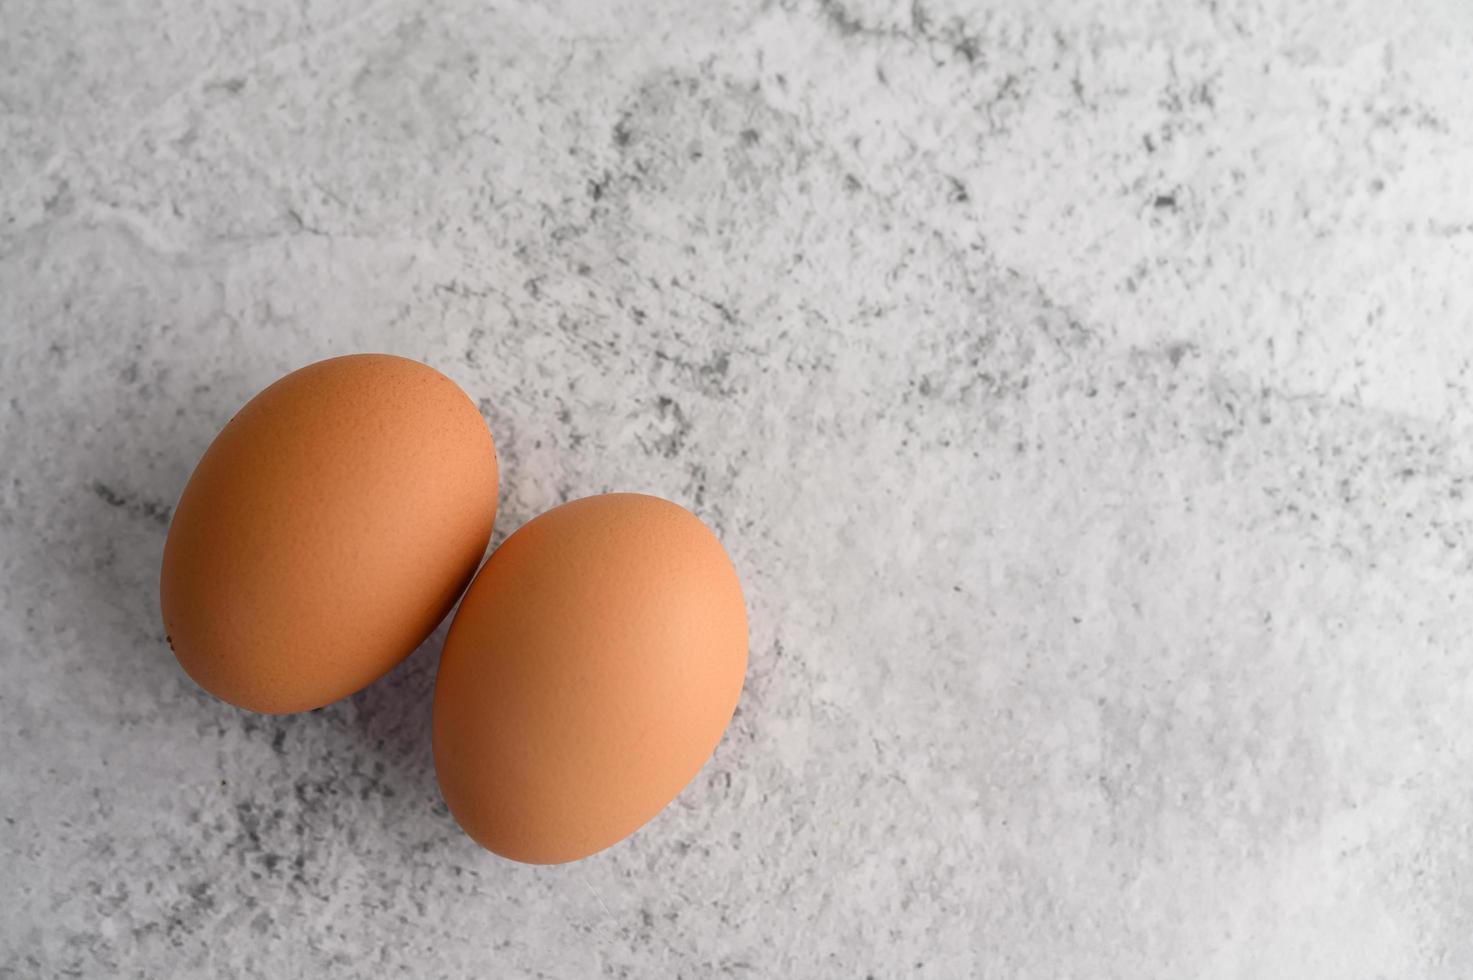 deux œufs bruns biologiques photo